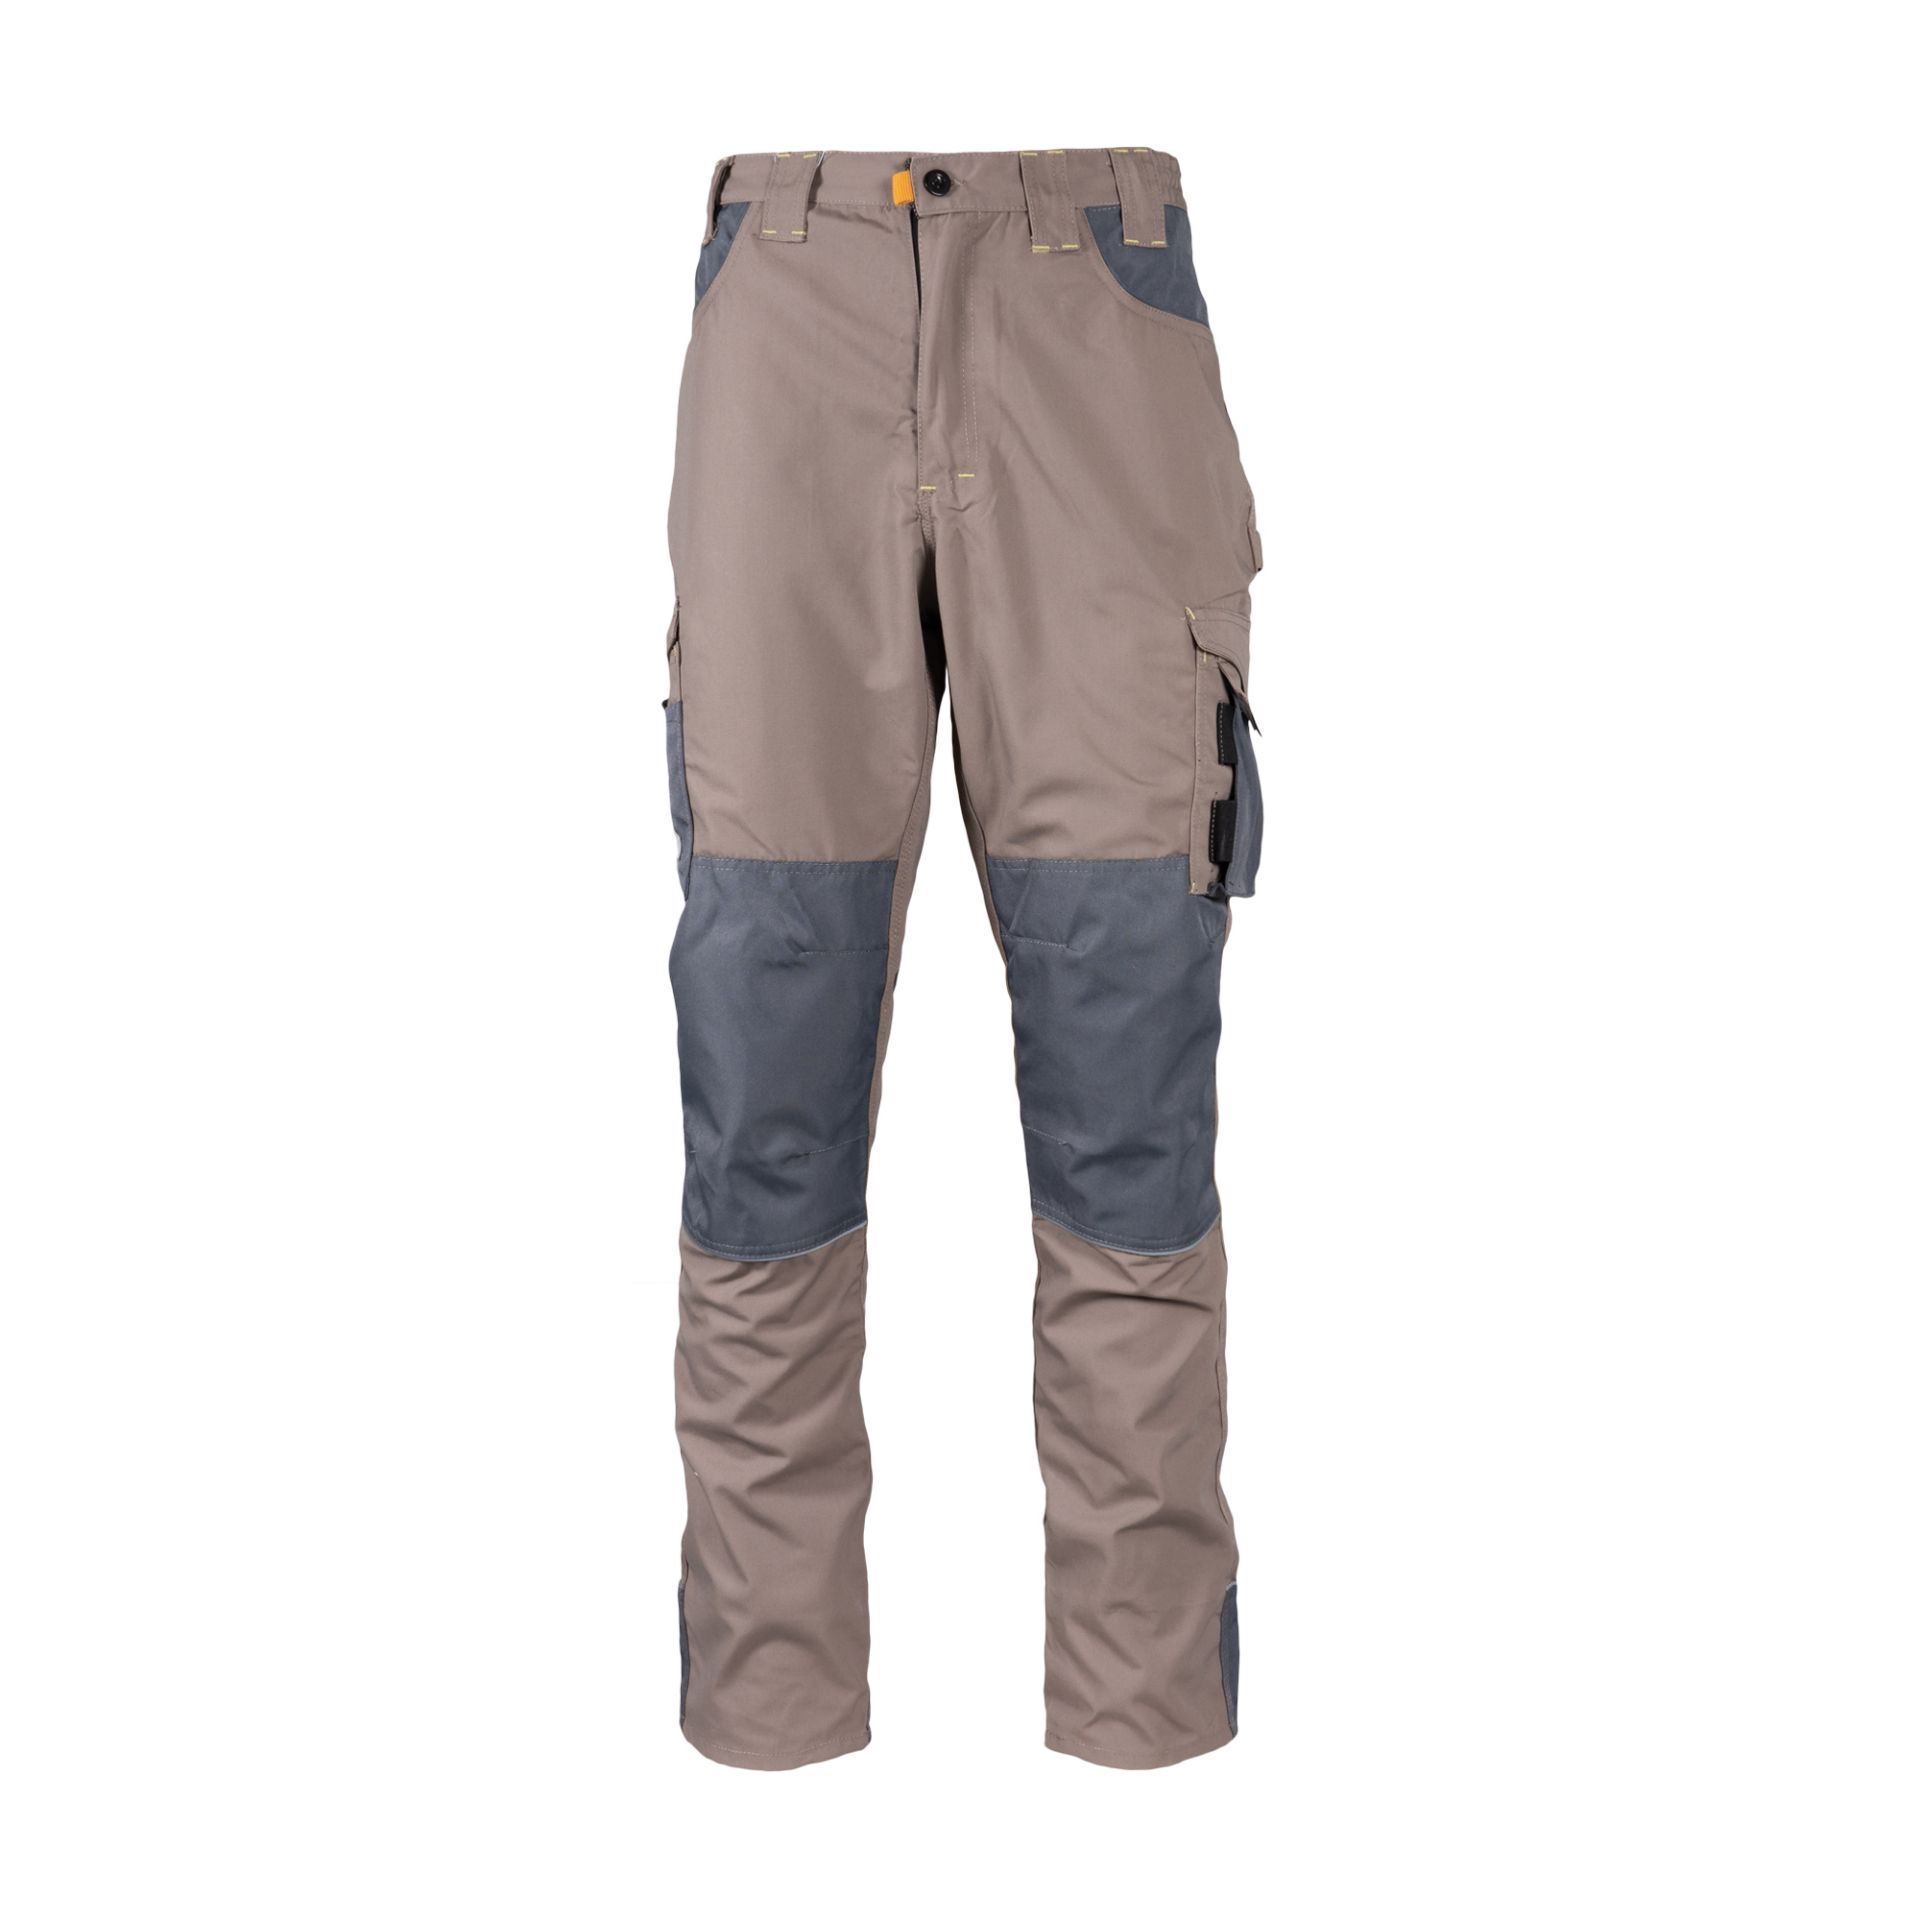 Rebel Tech Gear Trousers Desert Dust | Pienaar Brothers | PPE ...